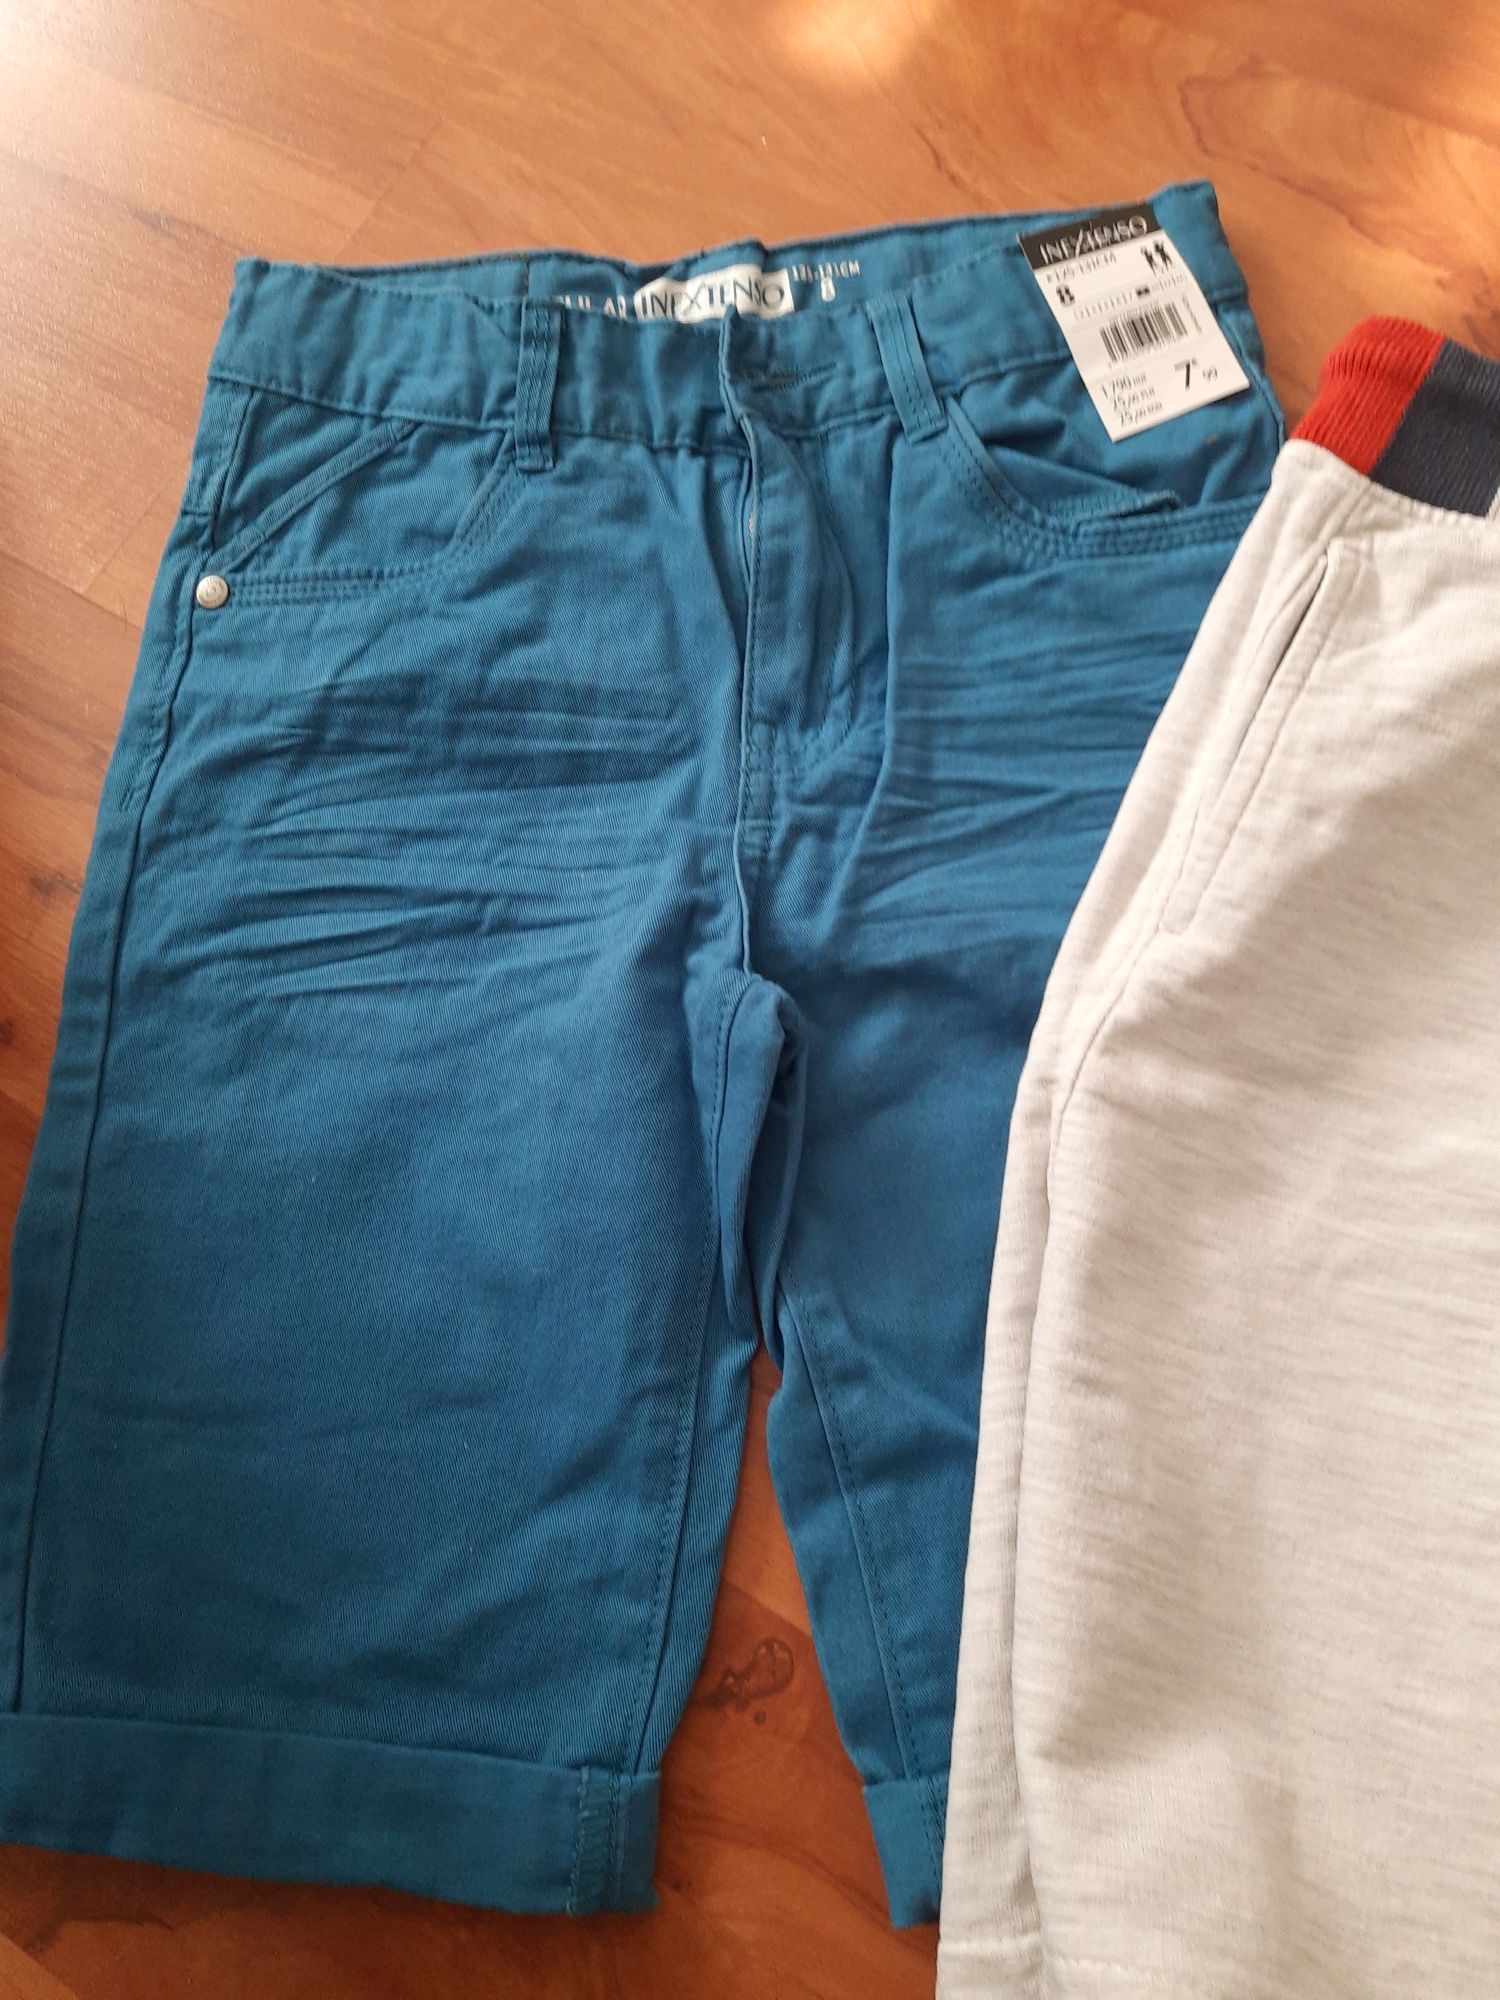 Spodnie niebieskie spodenki krotkie 128 8 lat